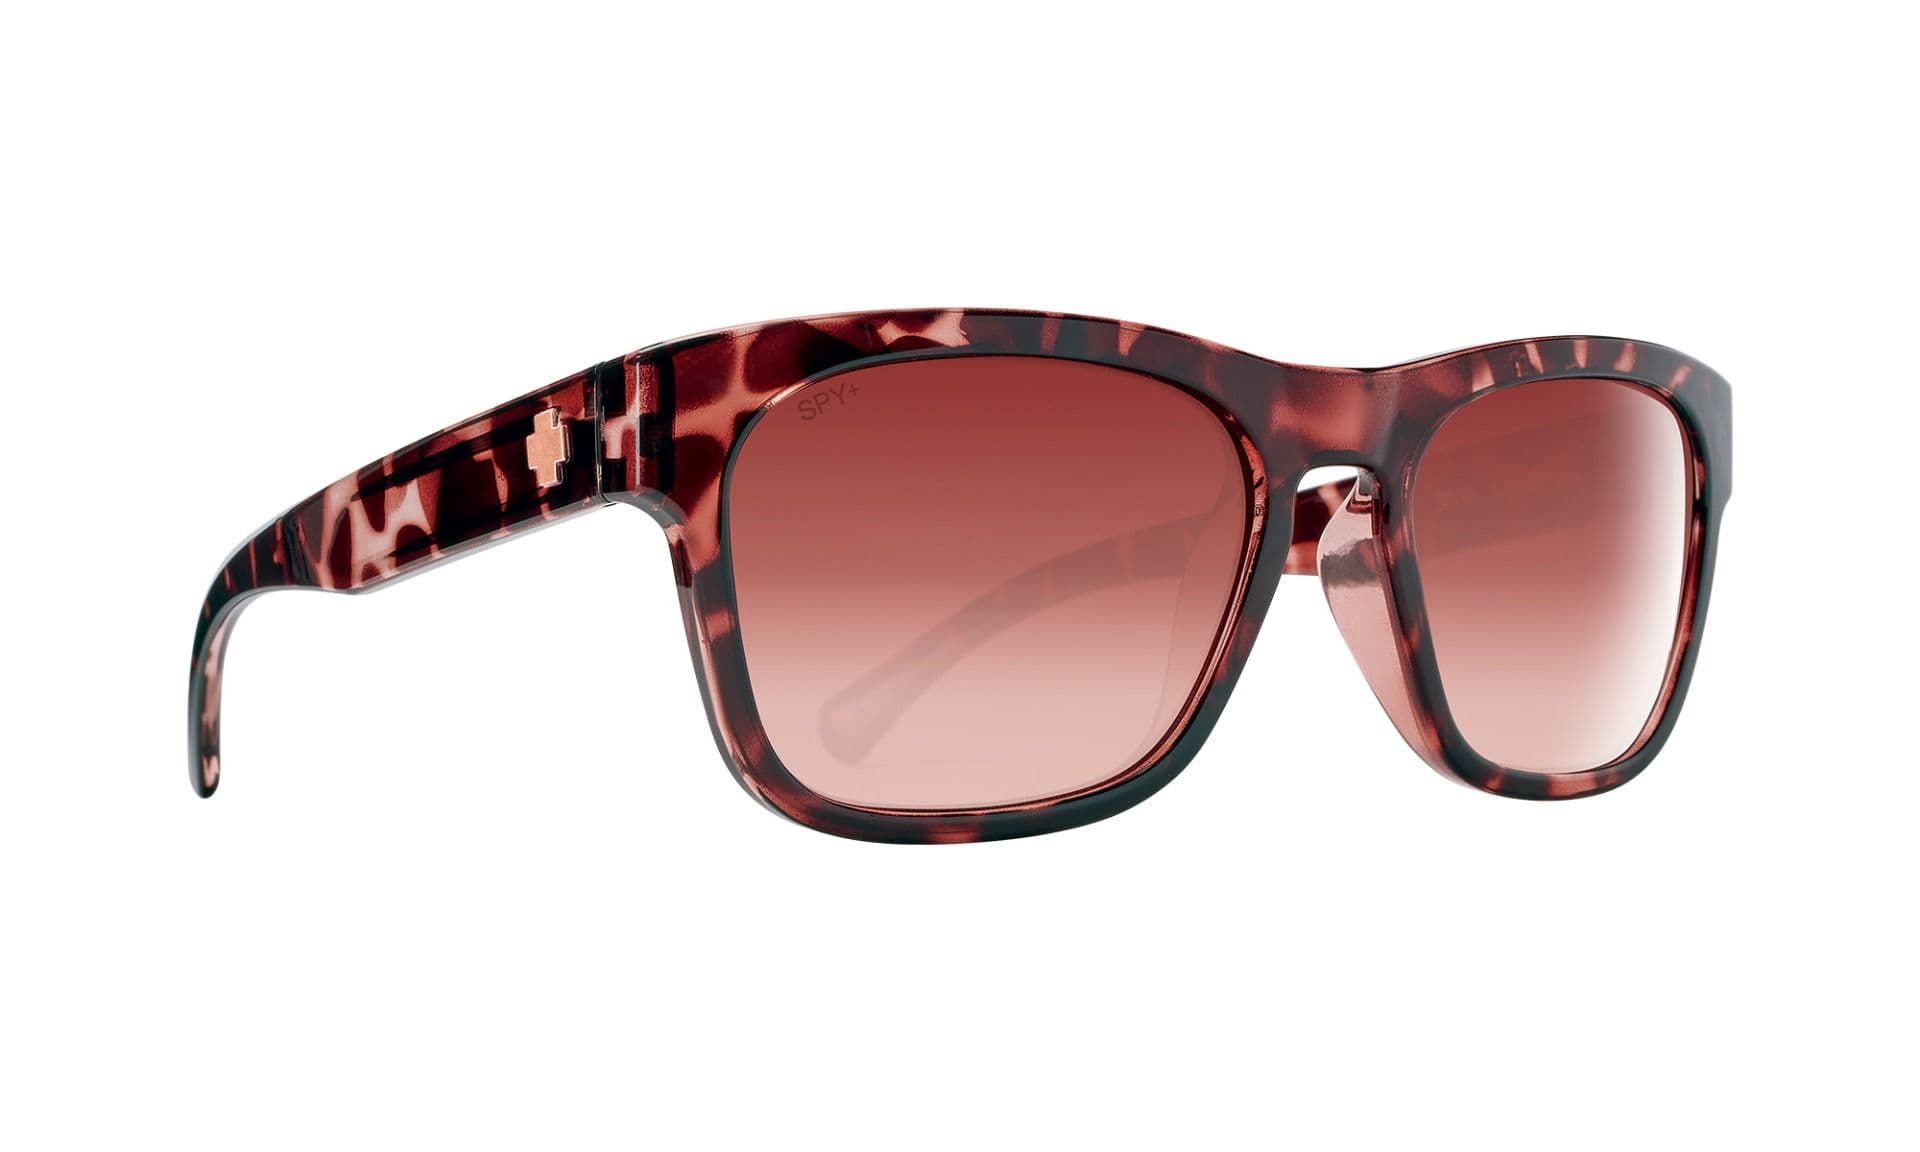 Spy Optic Crossway Sunglasses